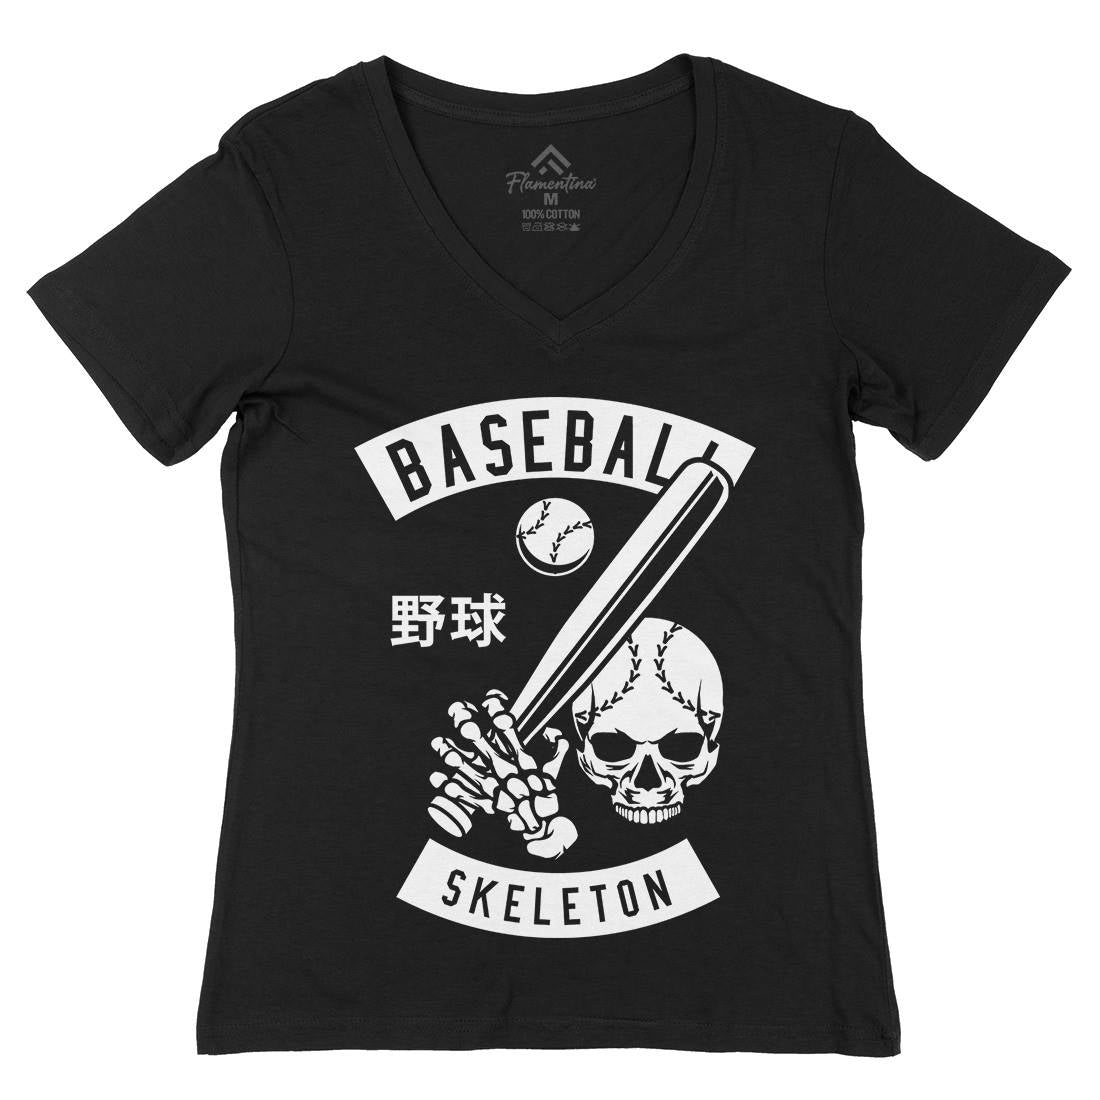 Baseball Skeleton Womens Organic V-Neck T-Shirt Sport B489